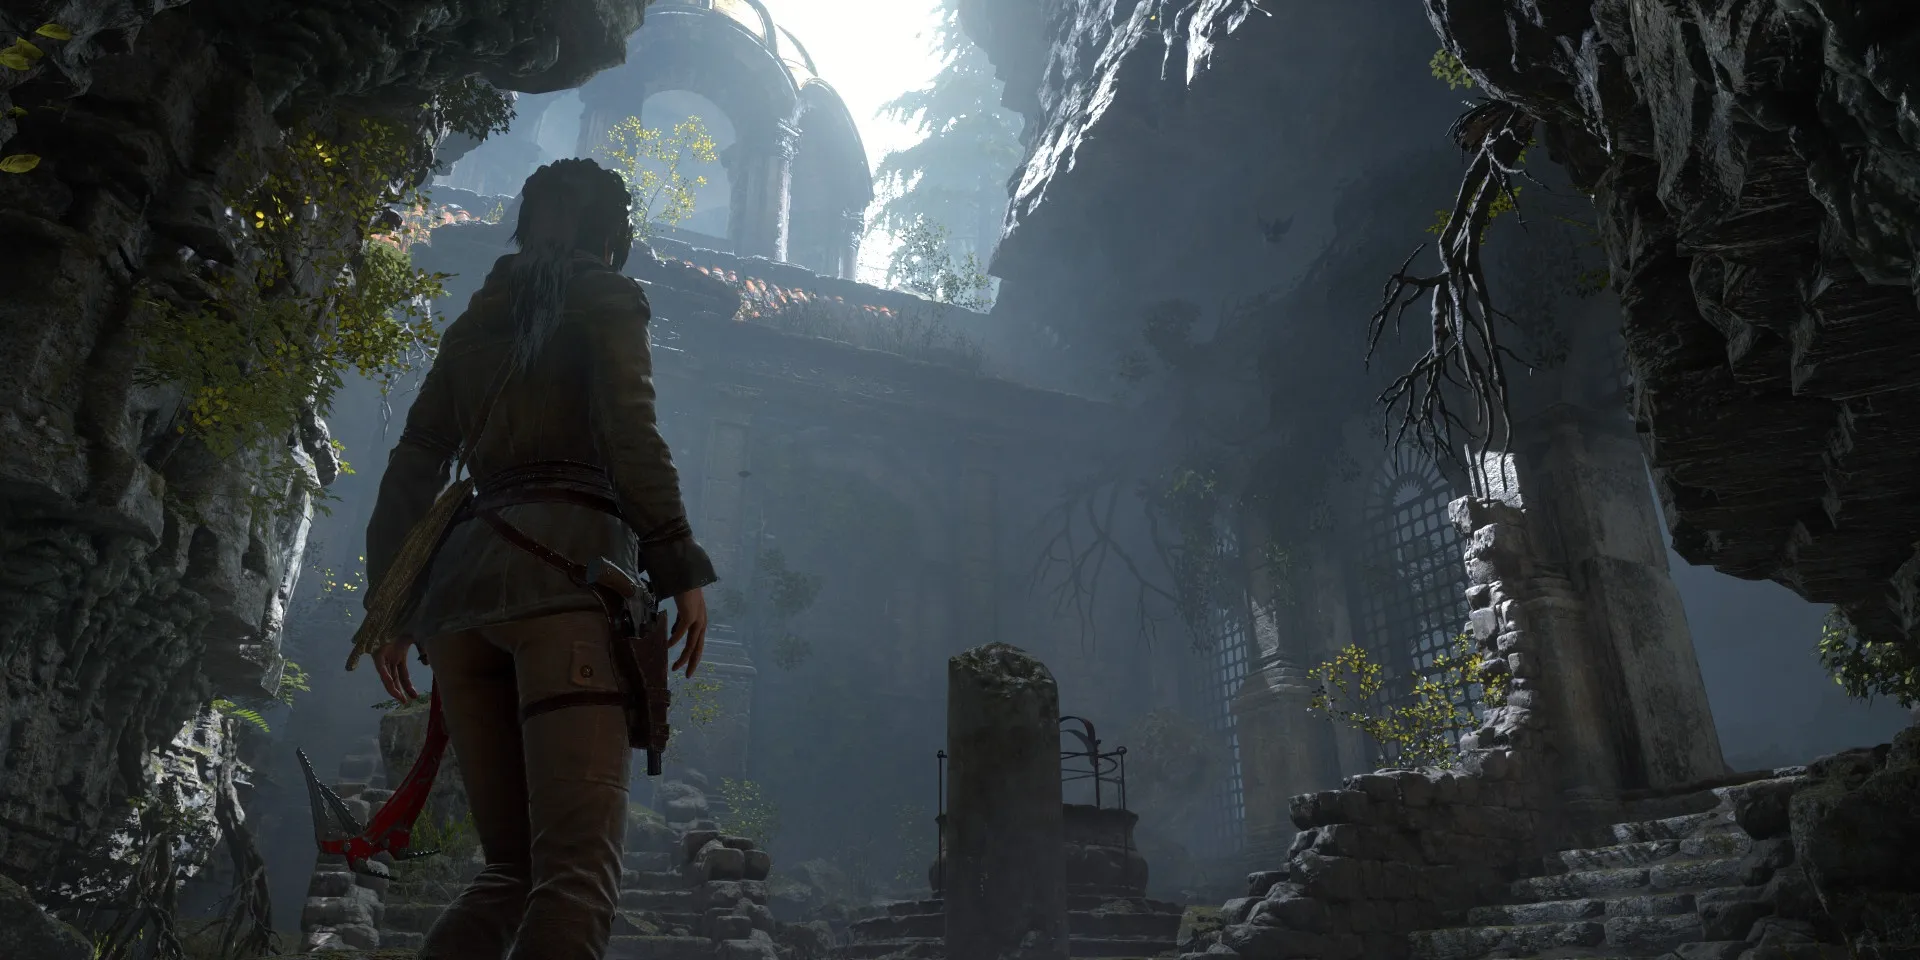 Lara Croft mirando hacia arriba a las ruinas dentro de una alcoba